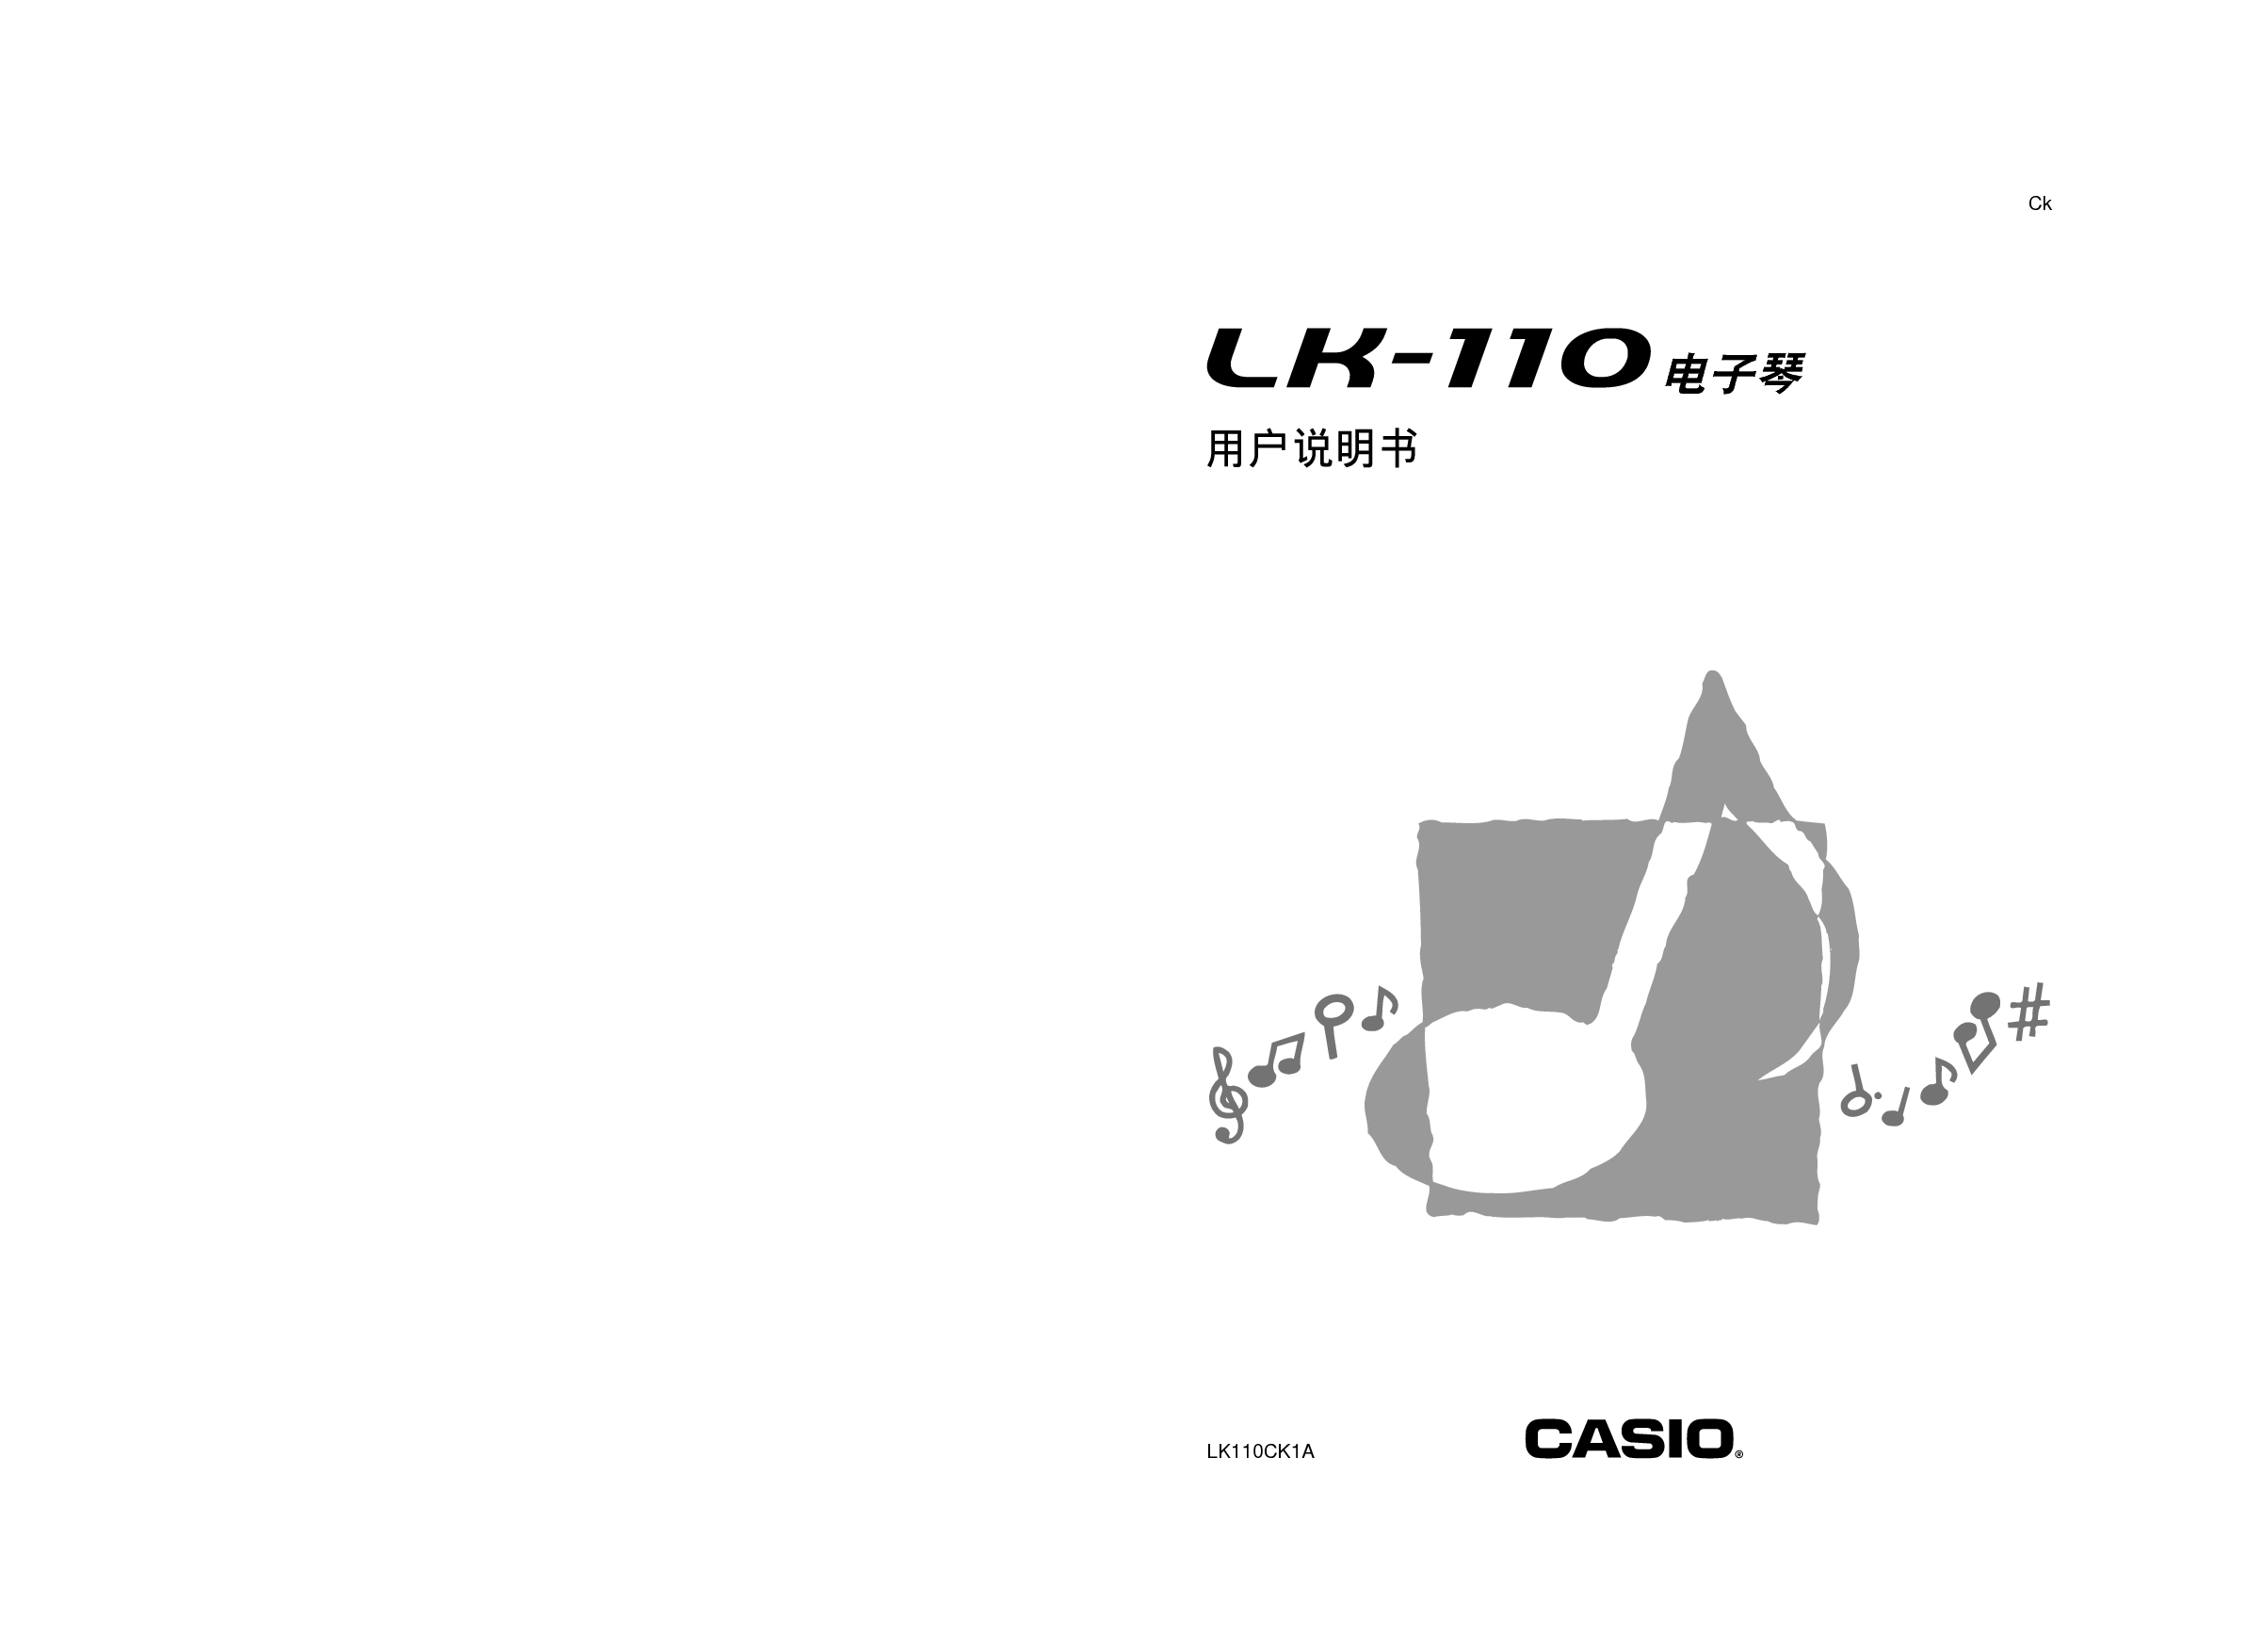 卡西欧 Casio LK-110 使用说明书 封面